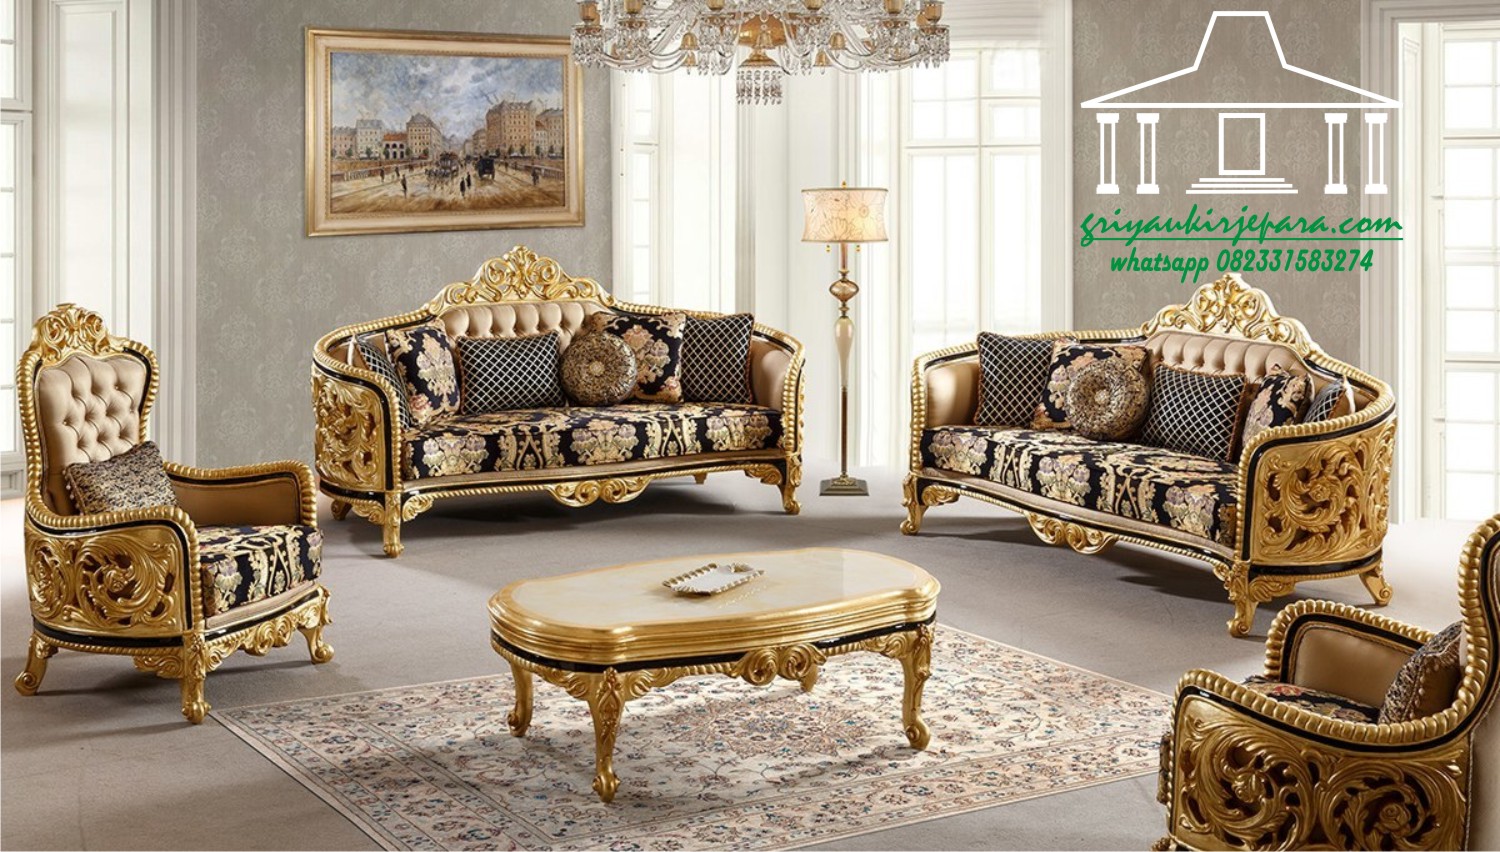 sofa terbaru mewah - 50+ Sofa Ruang Tamu Jati Murah